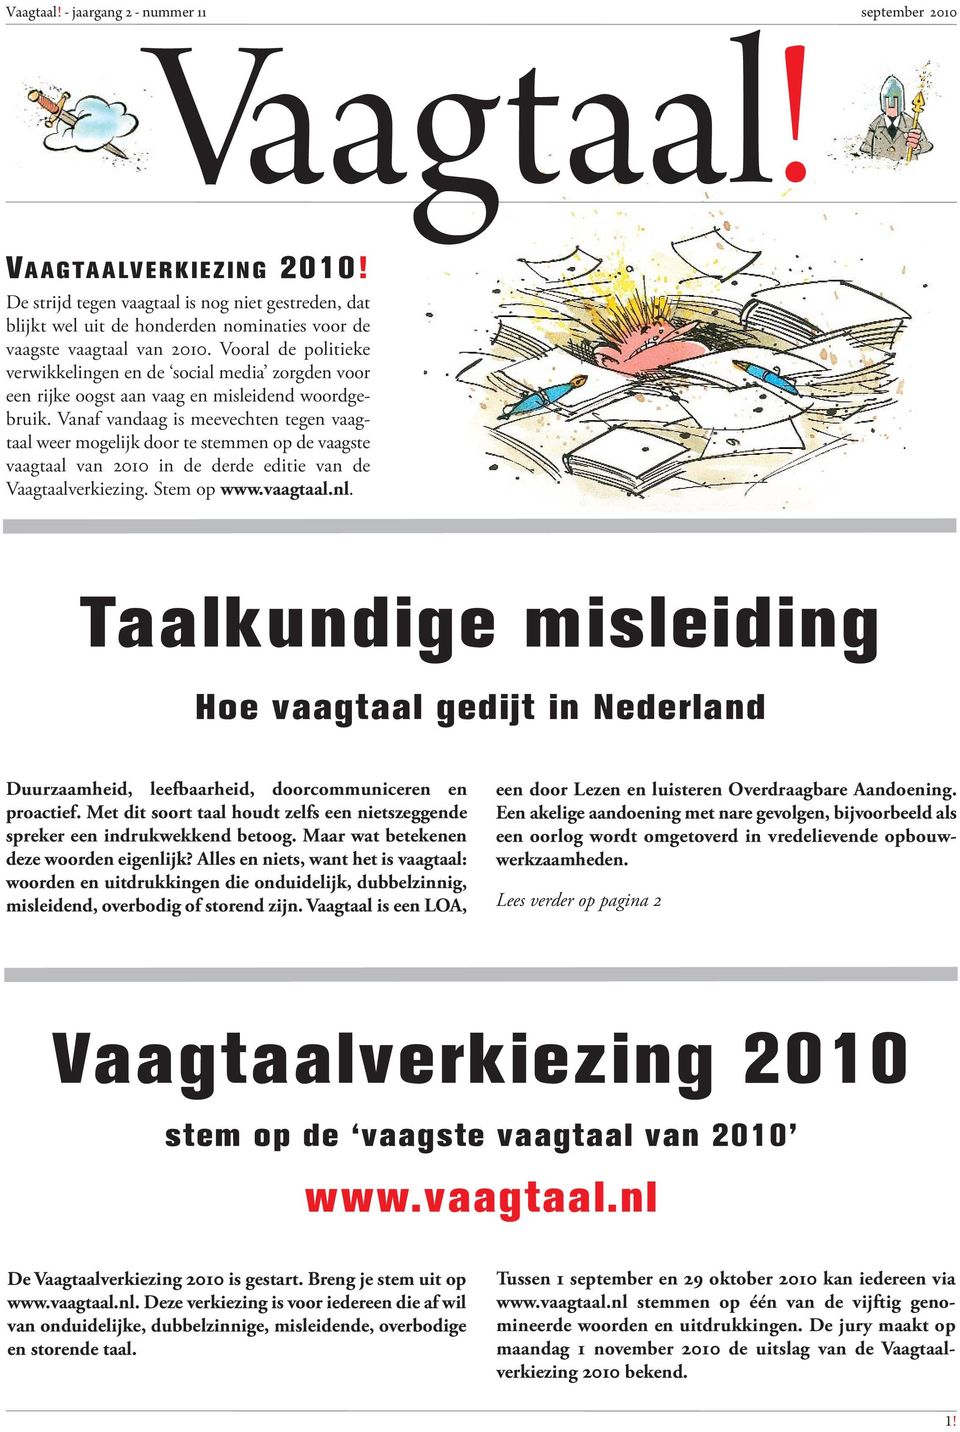 Vanaf vandaag is meevechten tegen vaagtaal weer mogelijk door te stemmen op de vaagste vaagtaal van 2010 in de derde editie van de Vaagtaalverkiezing. Stem op www.vaagtaal.nl.